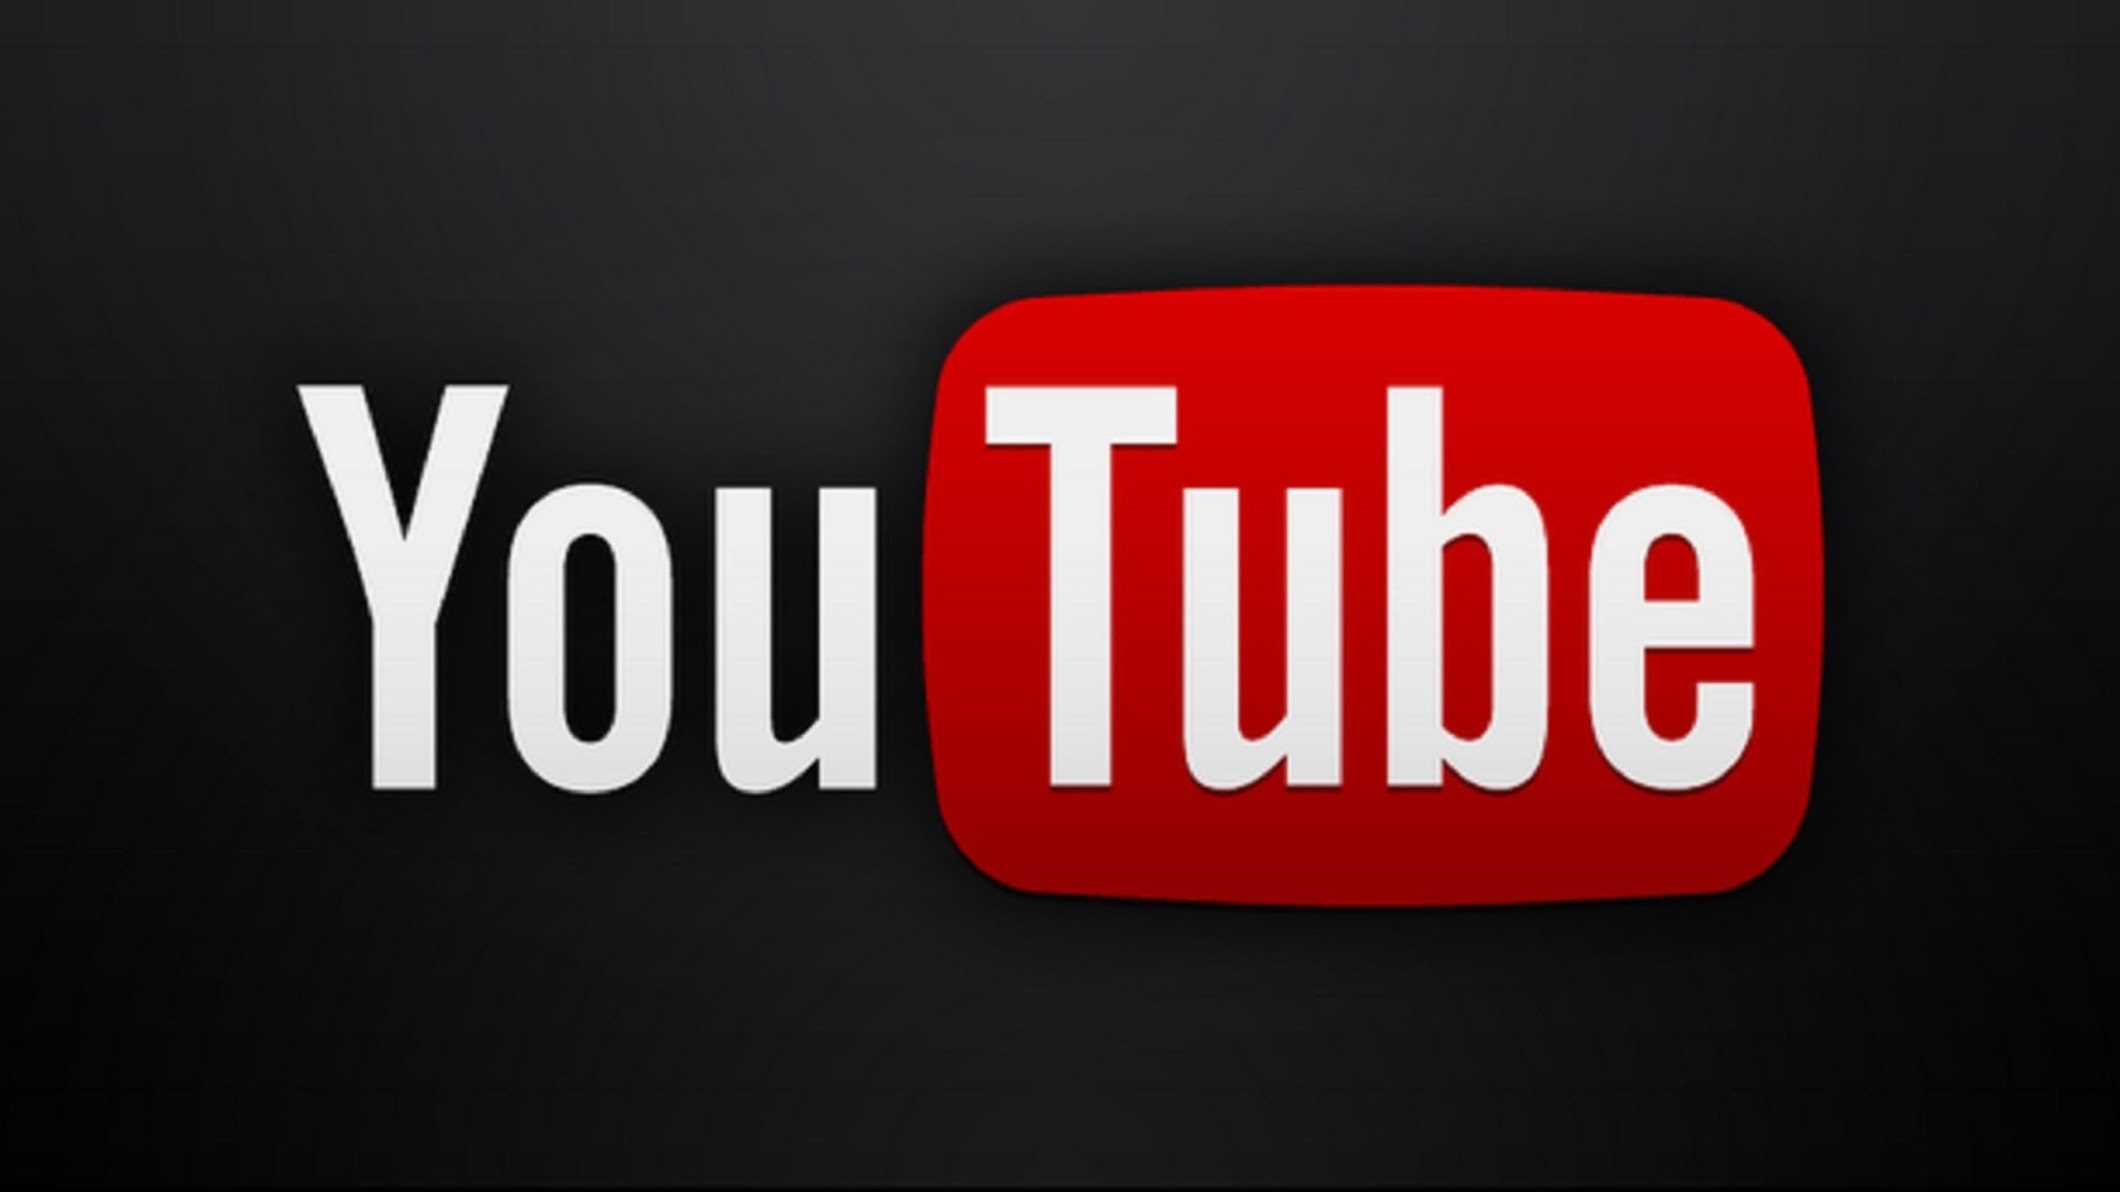 "يوتيوب" يستعد لمنافسة نتفليكس بإطلاق خدمة بث مدفوعة